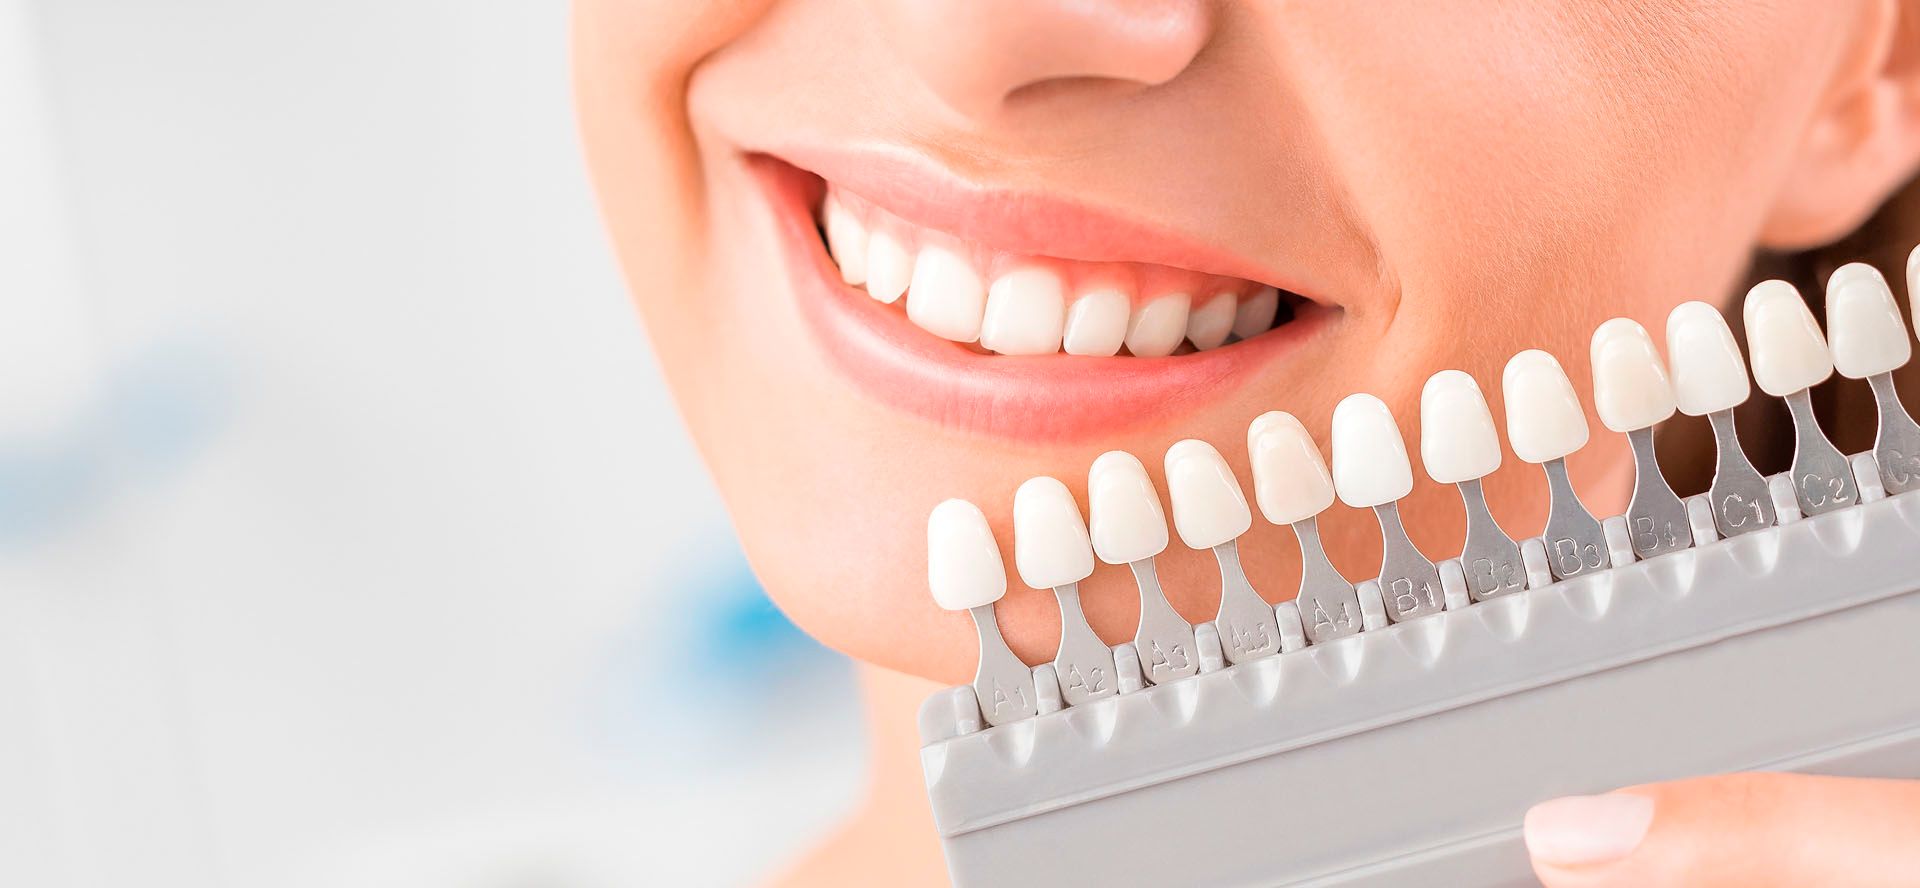 Brillantino sul dente: perché è importante rivolgersi a un odontoiatra